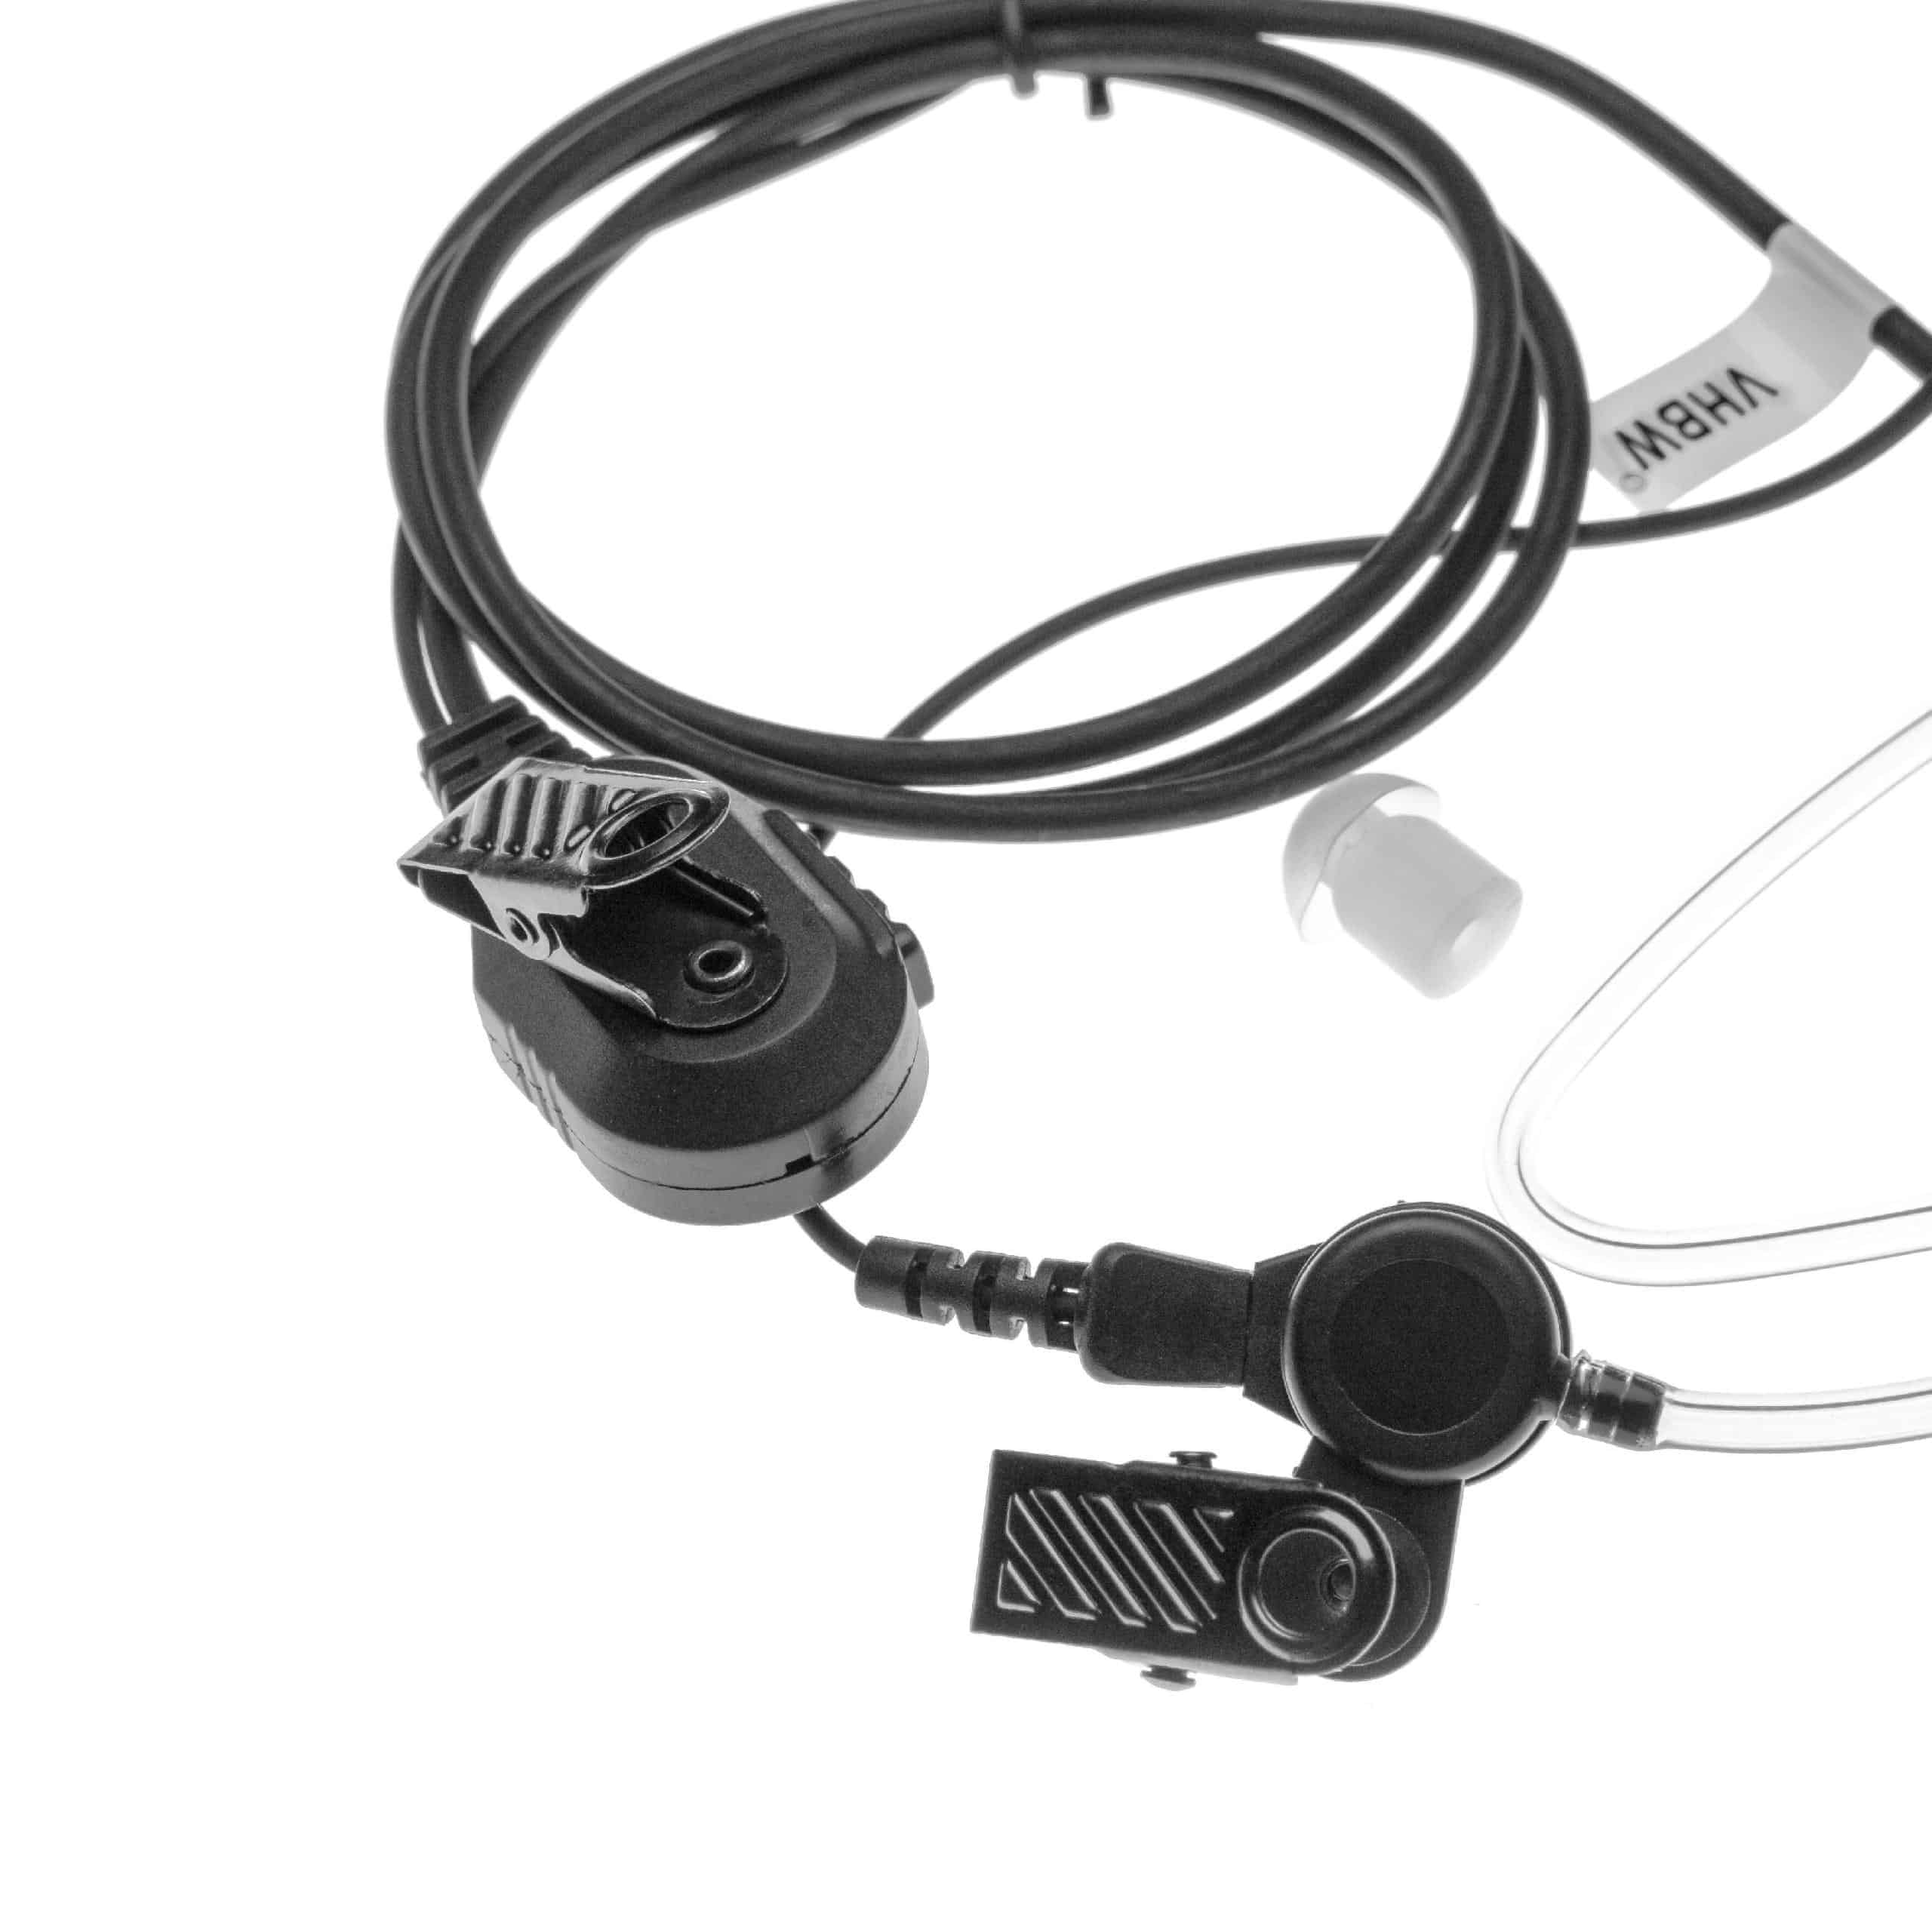 Security headset per ricetrasmittente Yaesu VX-2R - trasparente / nero + microfono push-to-talk + supporto a c